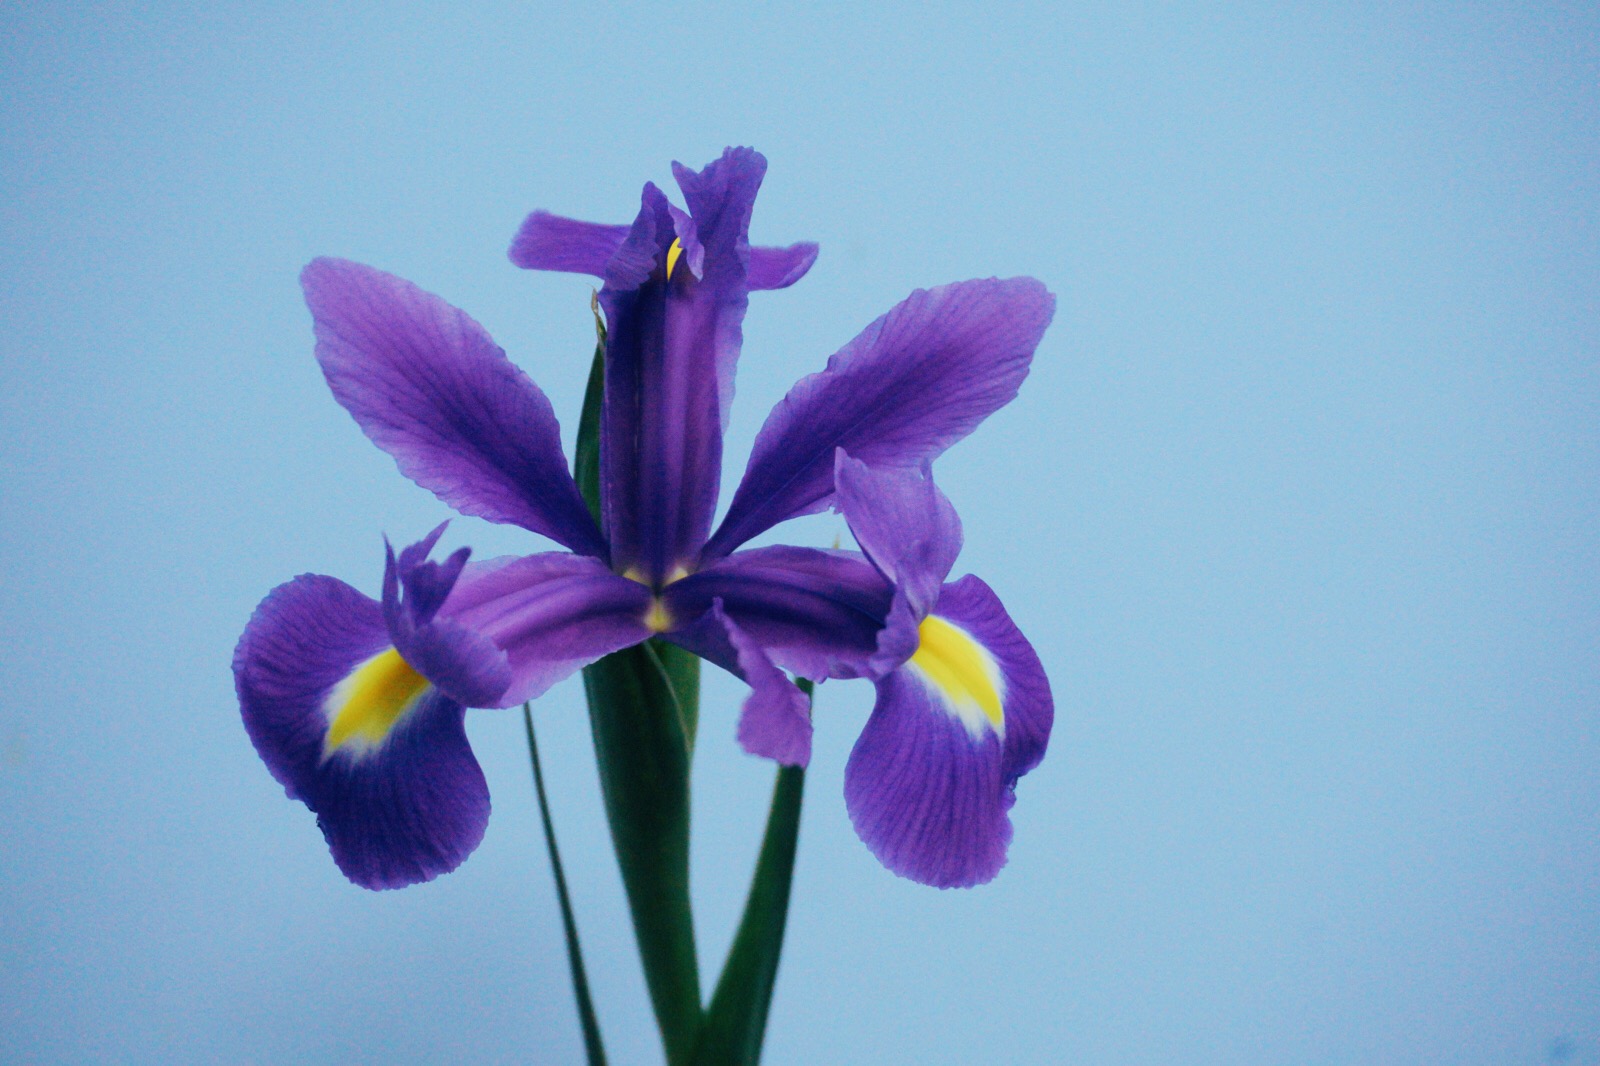 鸢尾iris tectorum 鸢尾科鸢尾属植物,多年生草本,法国国花,是一直都